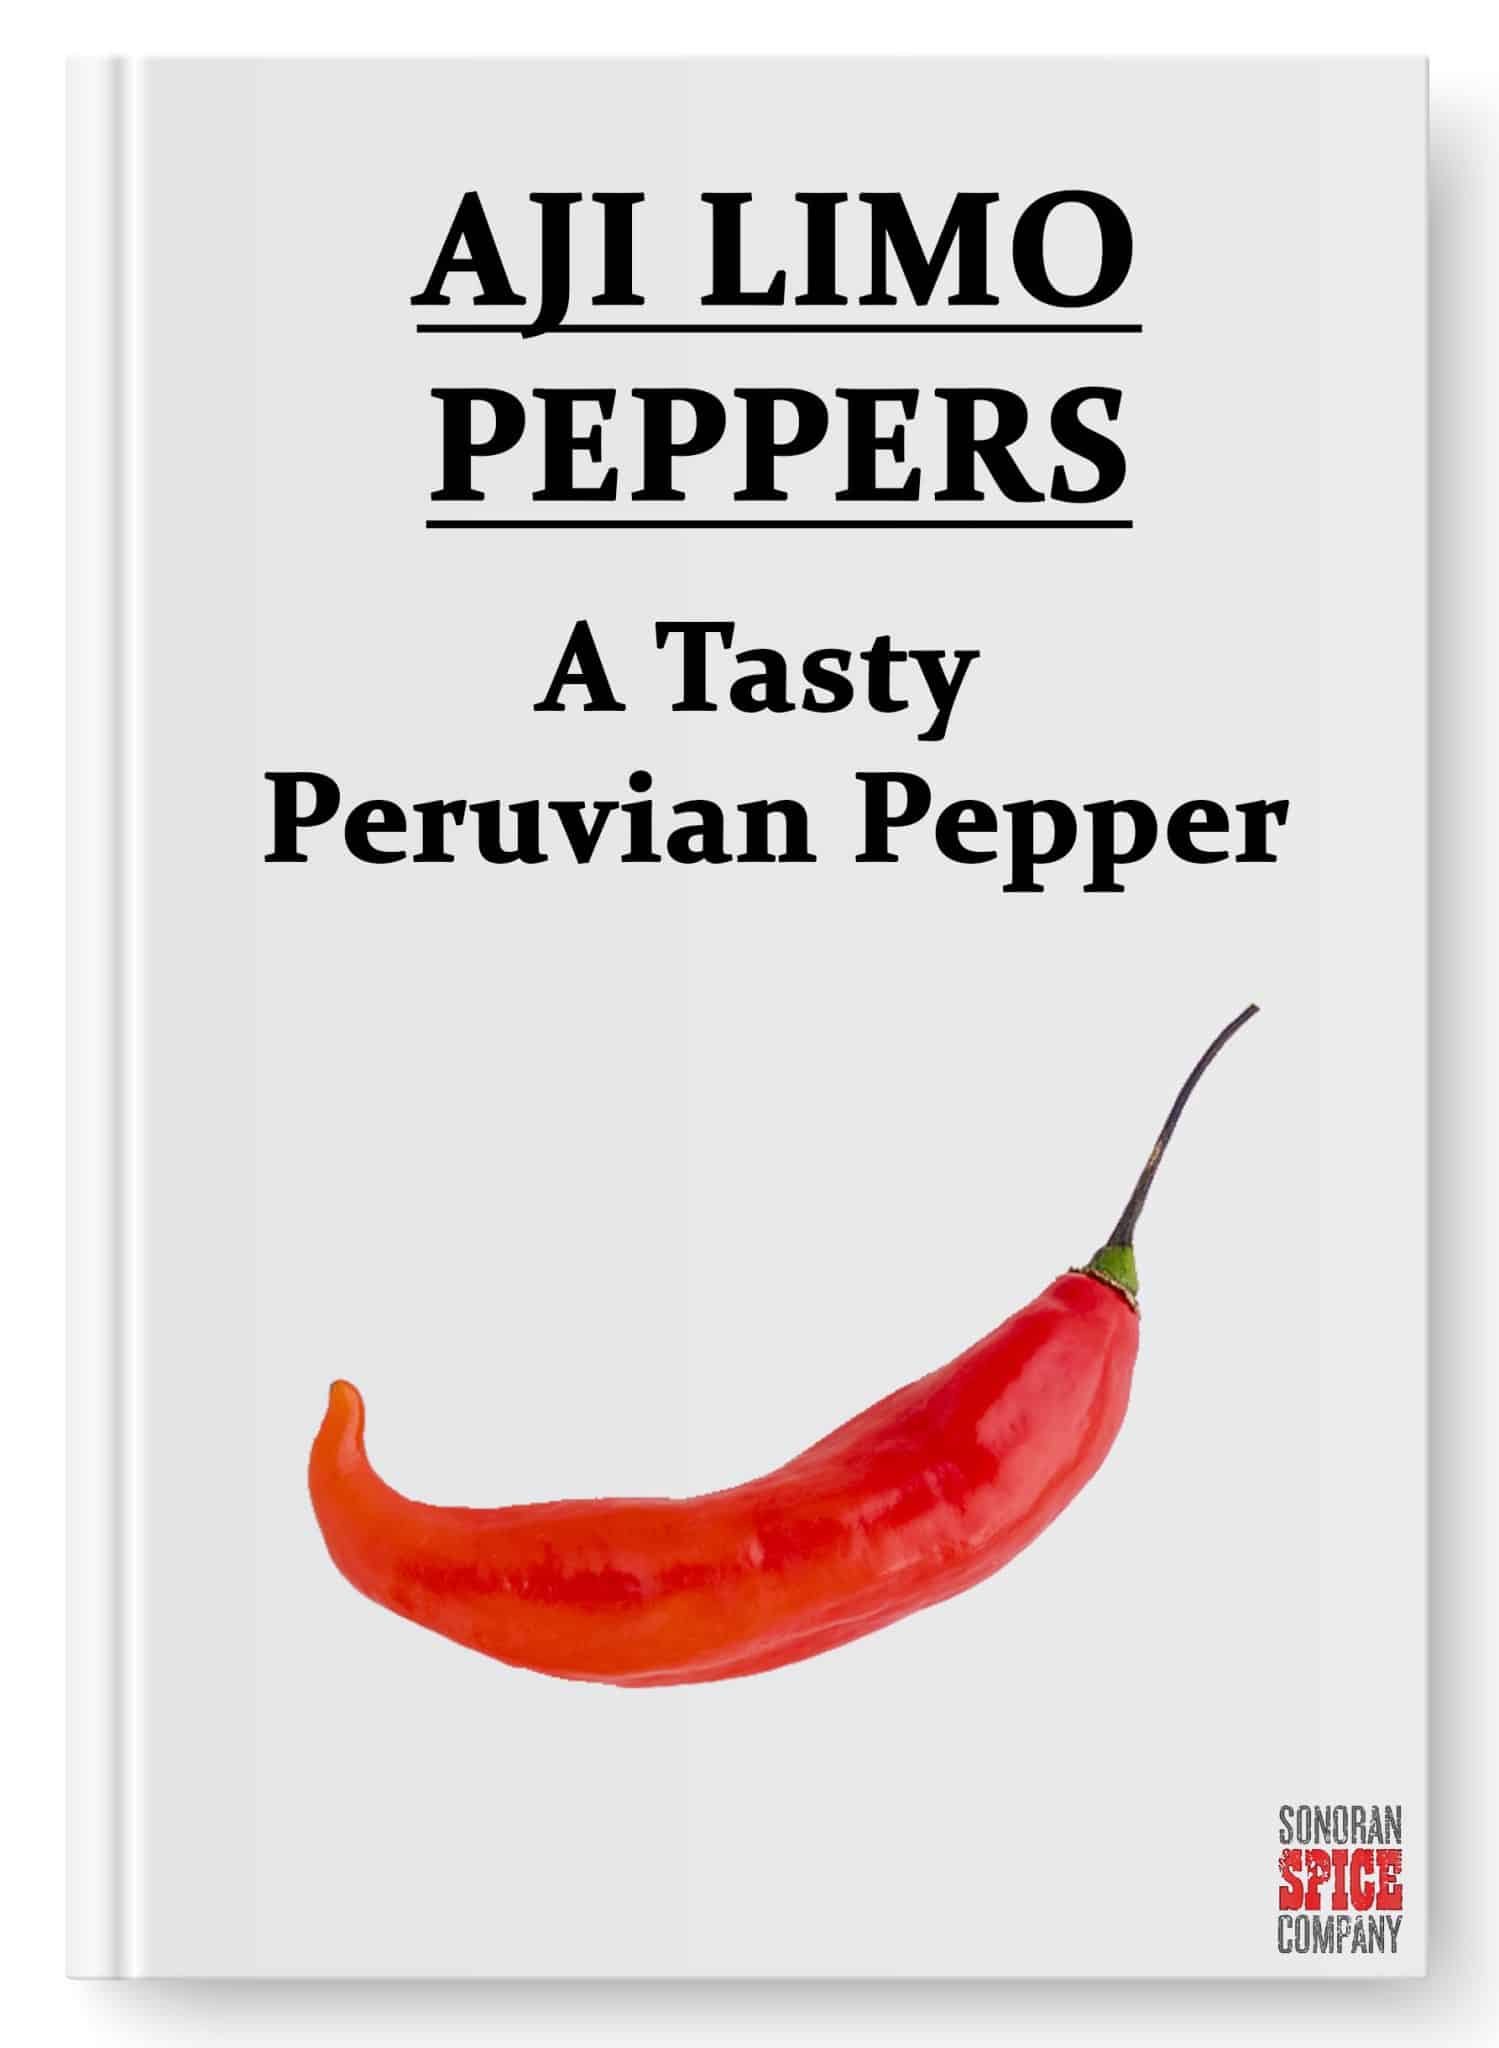 Aji Limo Peppers – A Tasty Peruvian Pepper